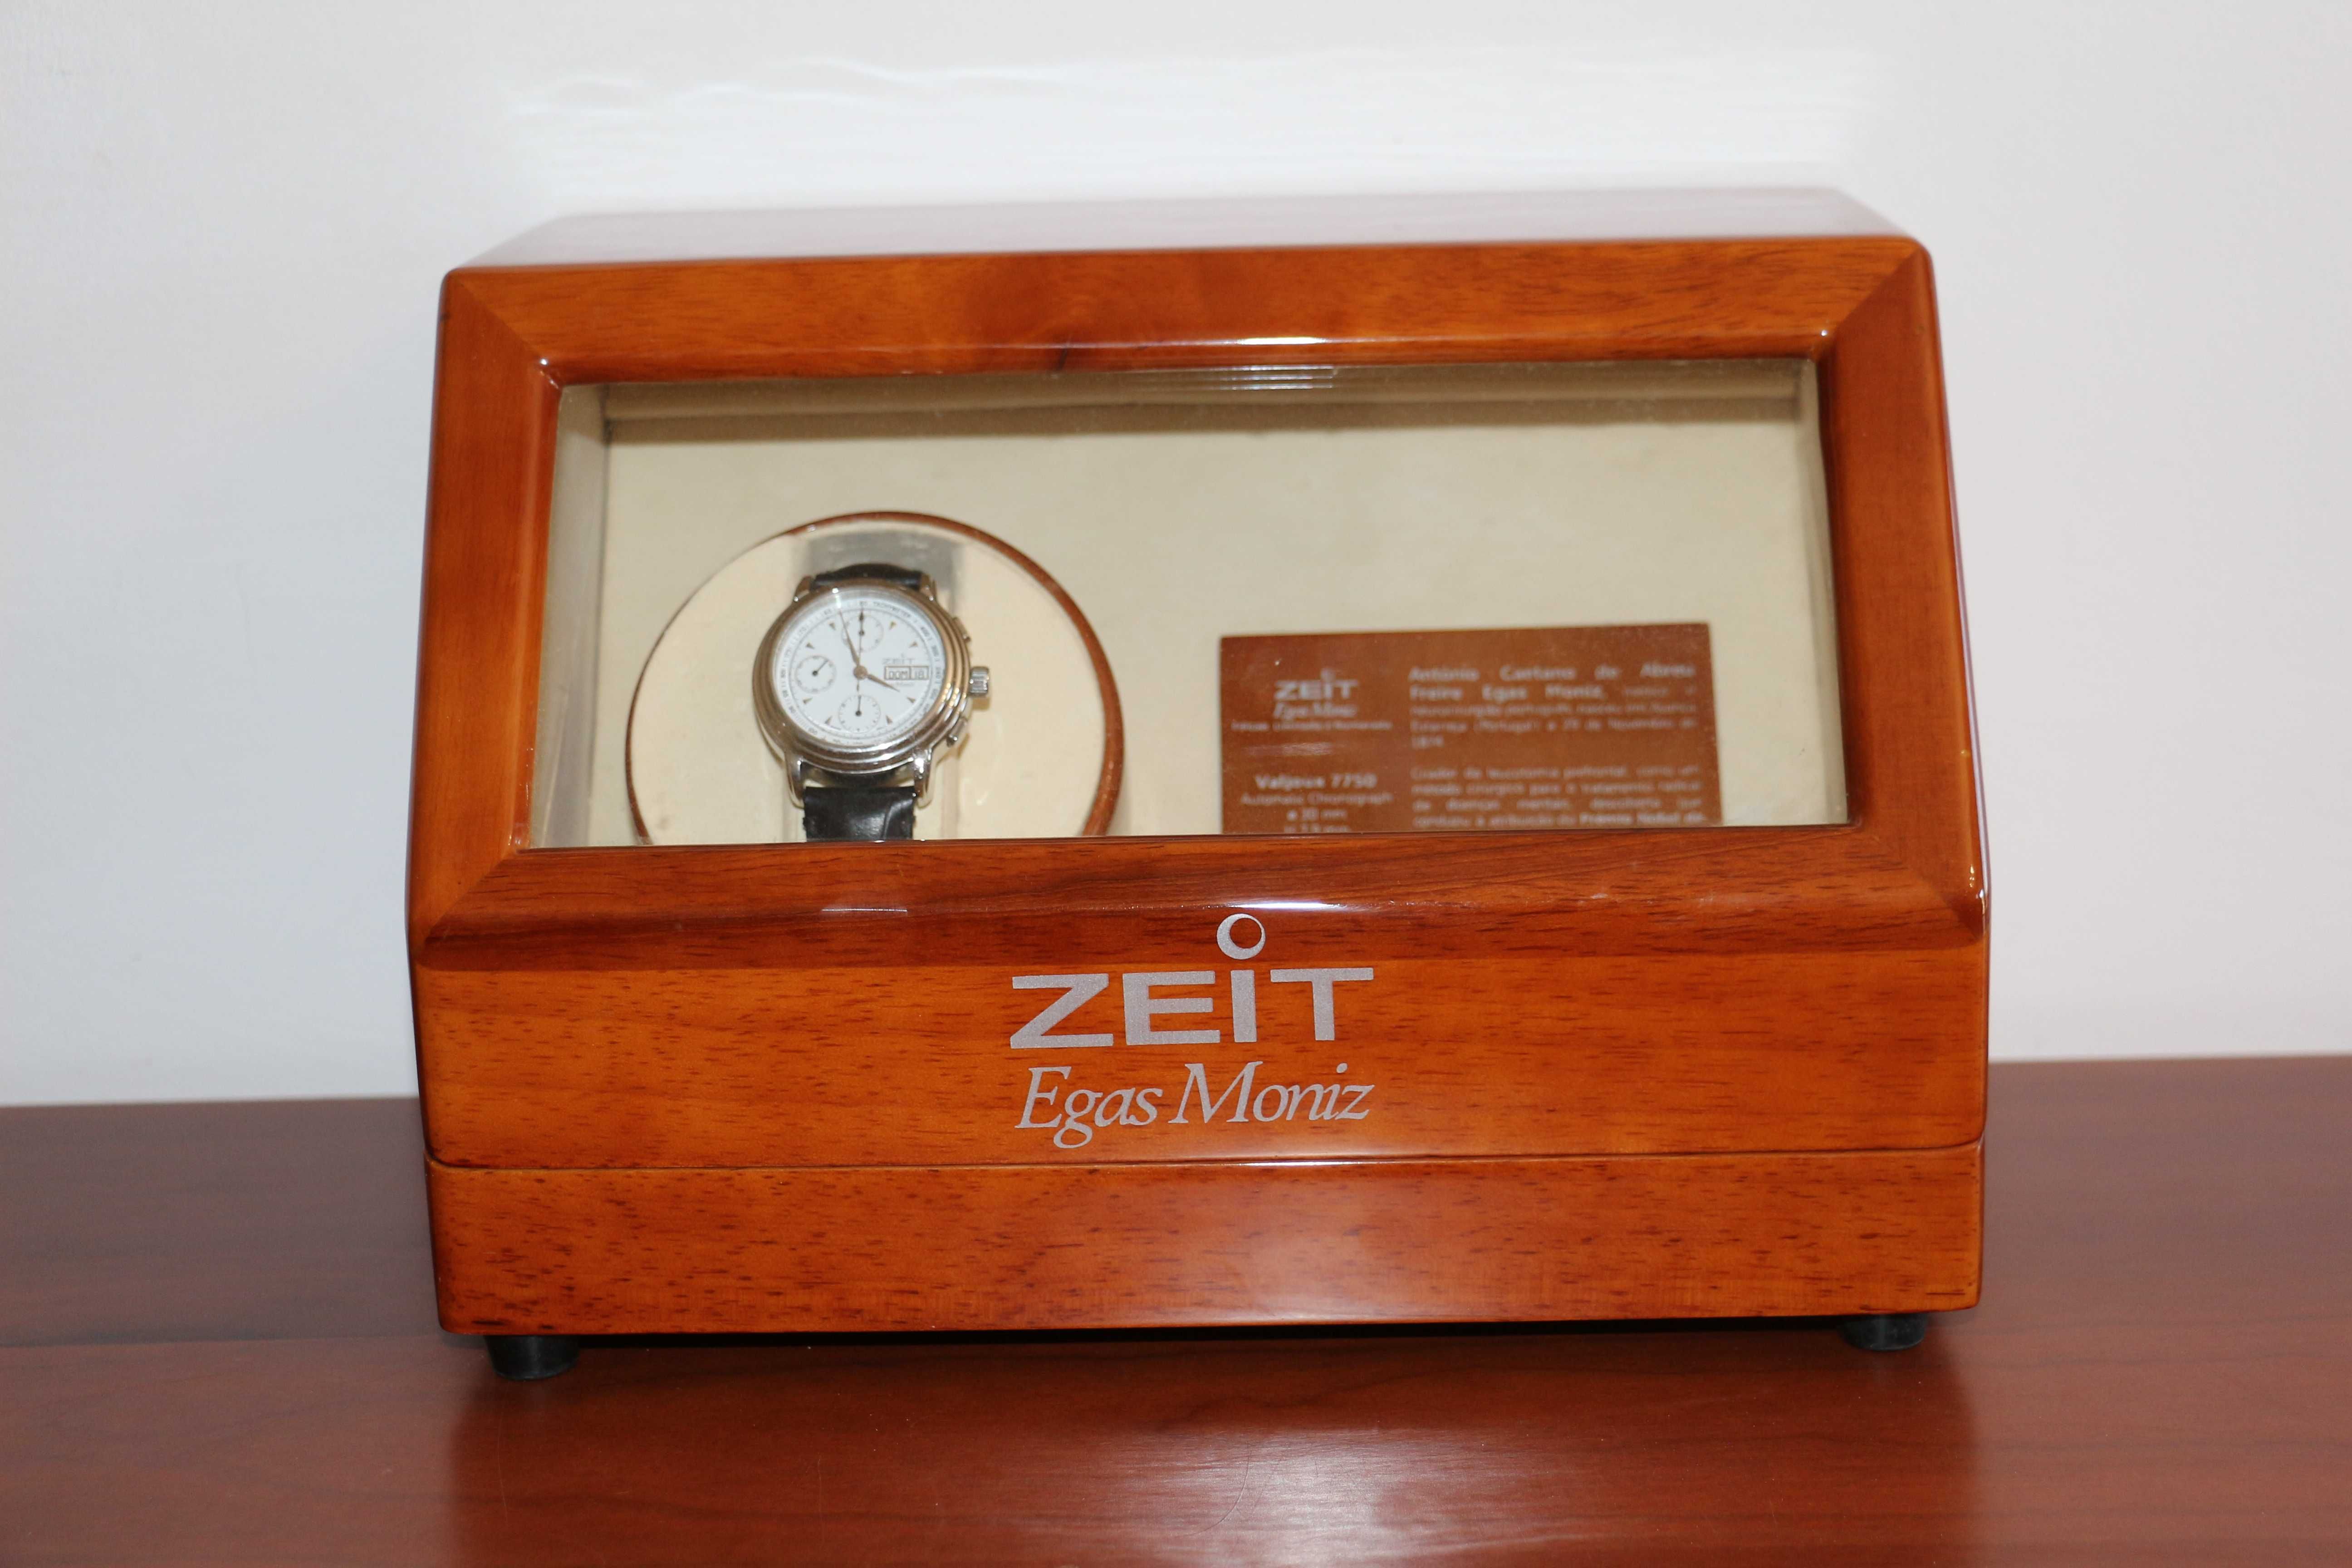 Relógio ZEIT Egas Moniz , edição limitada e numerada